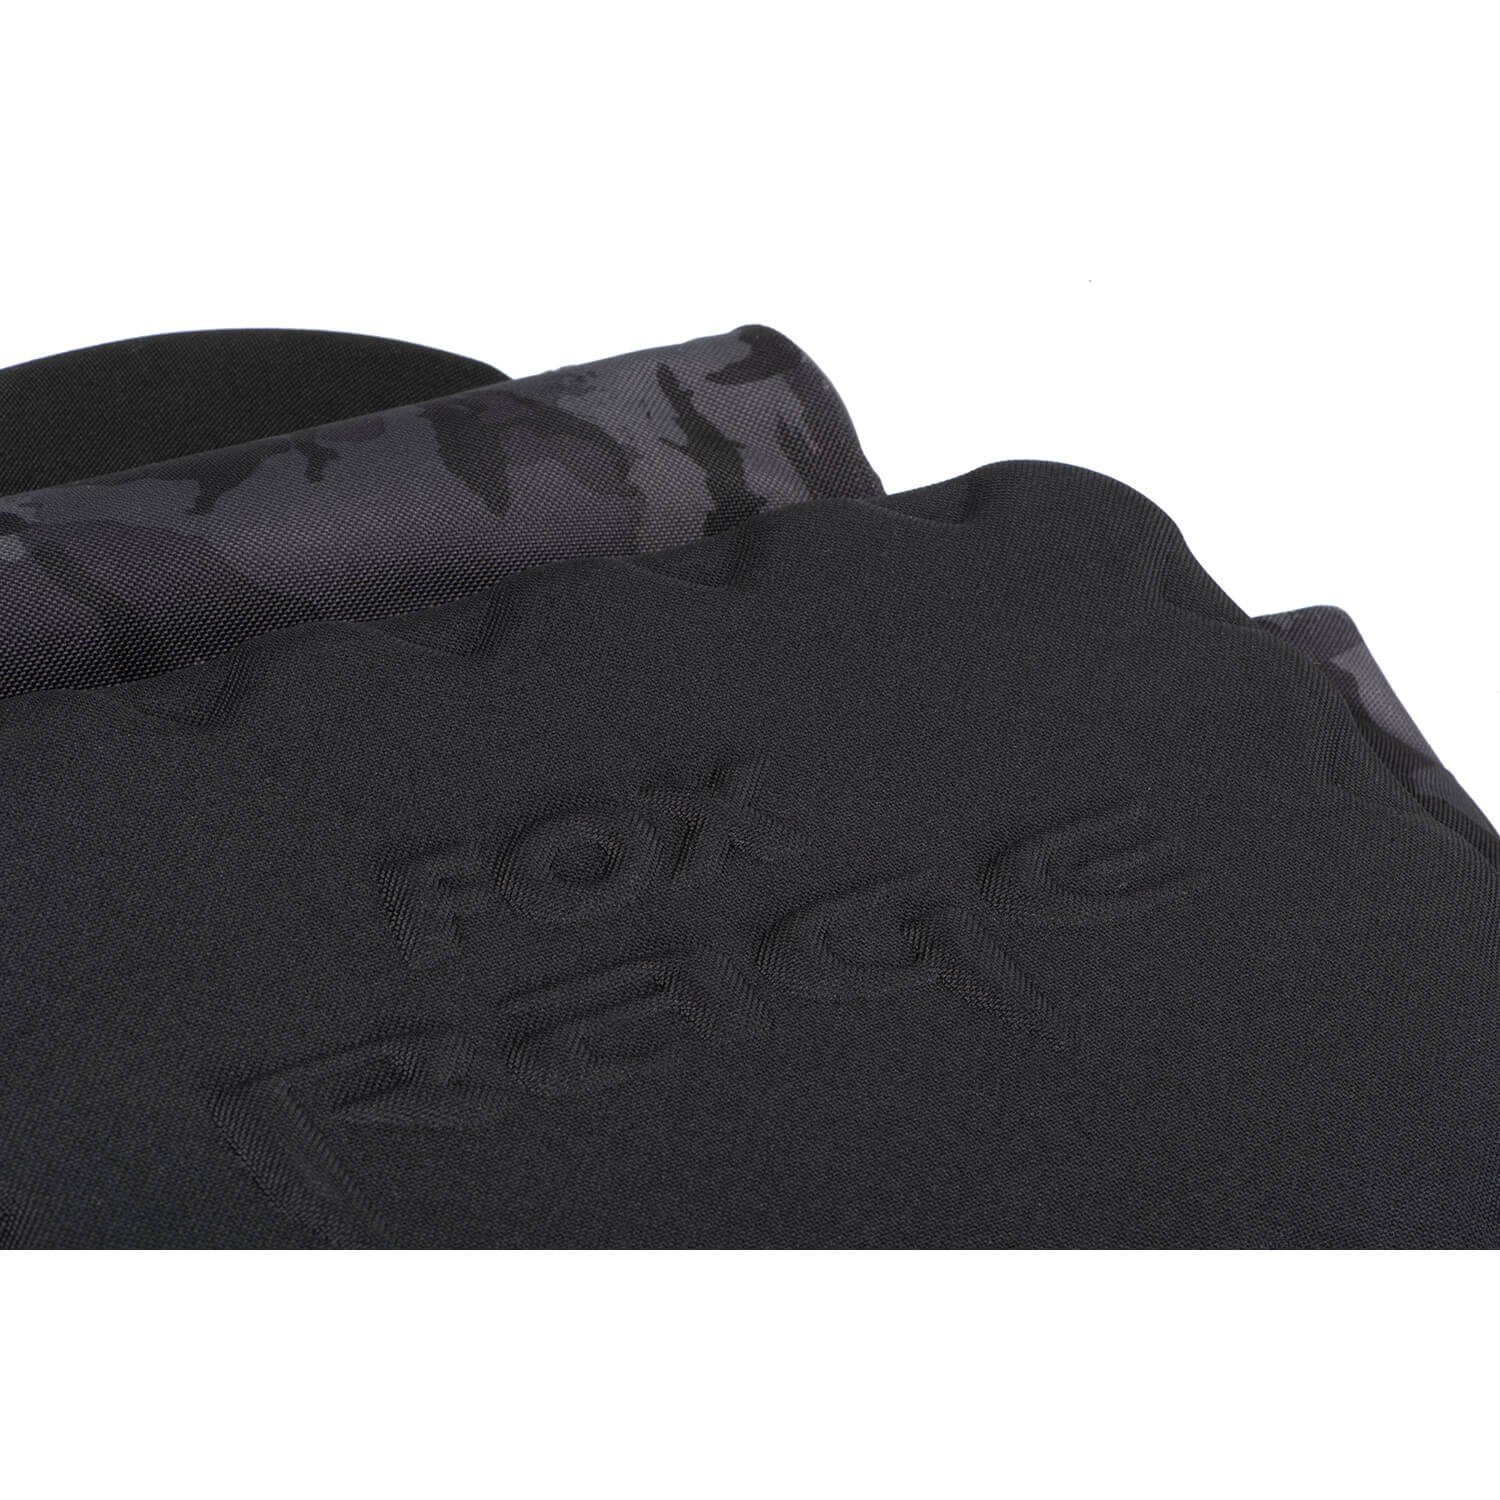 Rage die Voyager EVA-Taschenbasis, Klettgesicherte für Halterung Rage EVA-Handtragegriffe, Fox für Polarisationsbrille Federzugbefestigung Reisetasche, Fox für Medium Camo Zangen, Reisetasche Schultertragegurt, 3D-gepolsterter Komplett Hochrobuste Hartschalenaußentasche bestückt, Schützende Werkzeuge, Tackleboxen Carryall Camo-Tarnreißverschlüsse, mit